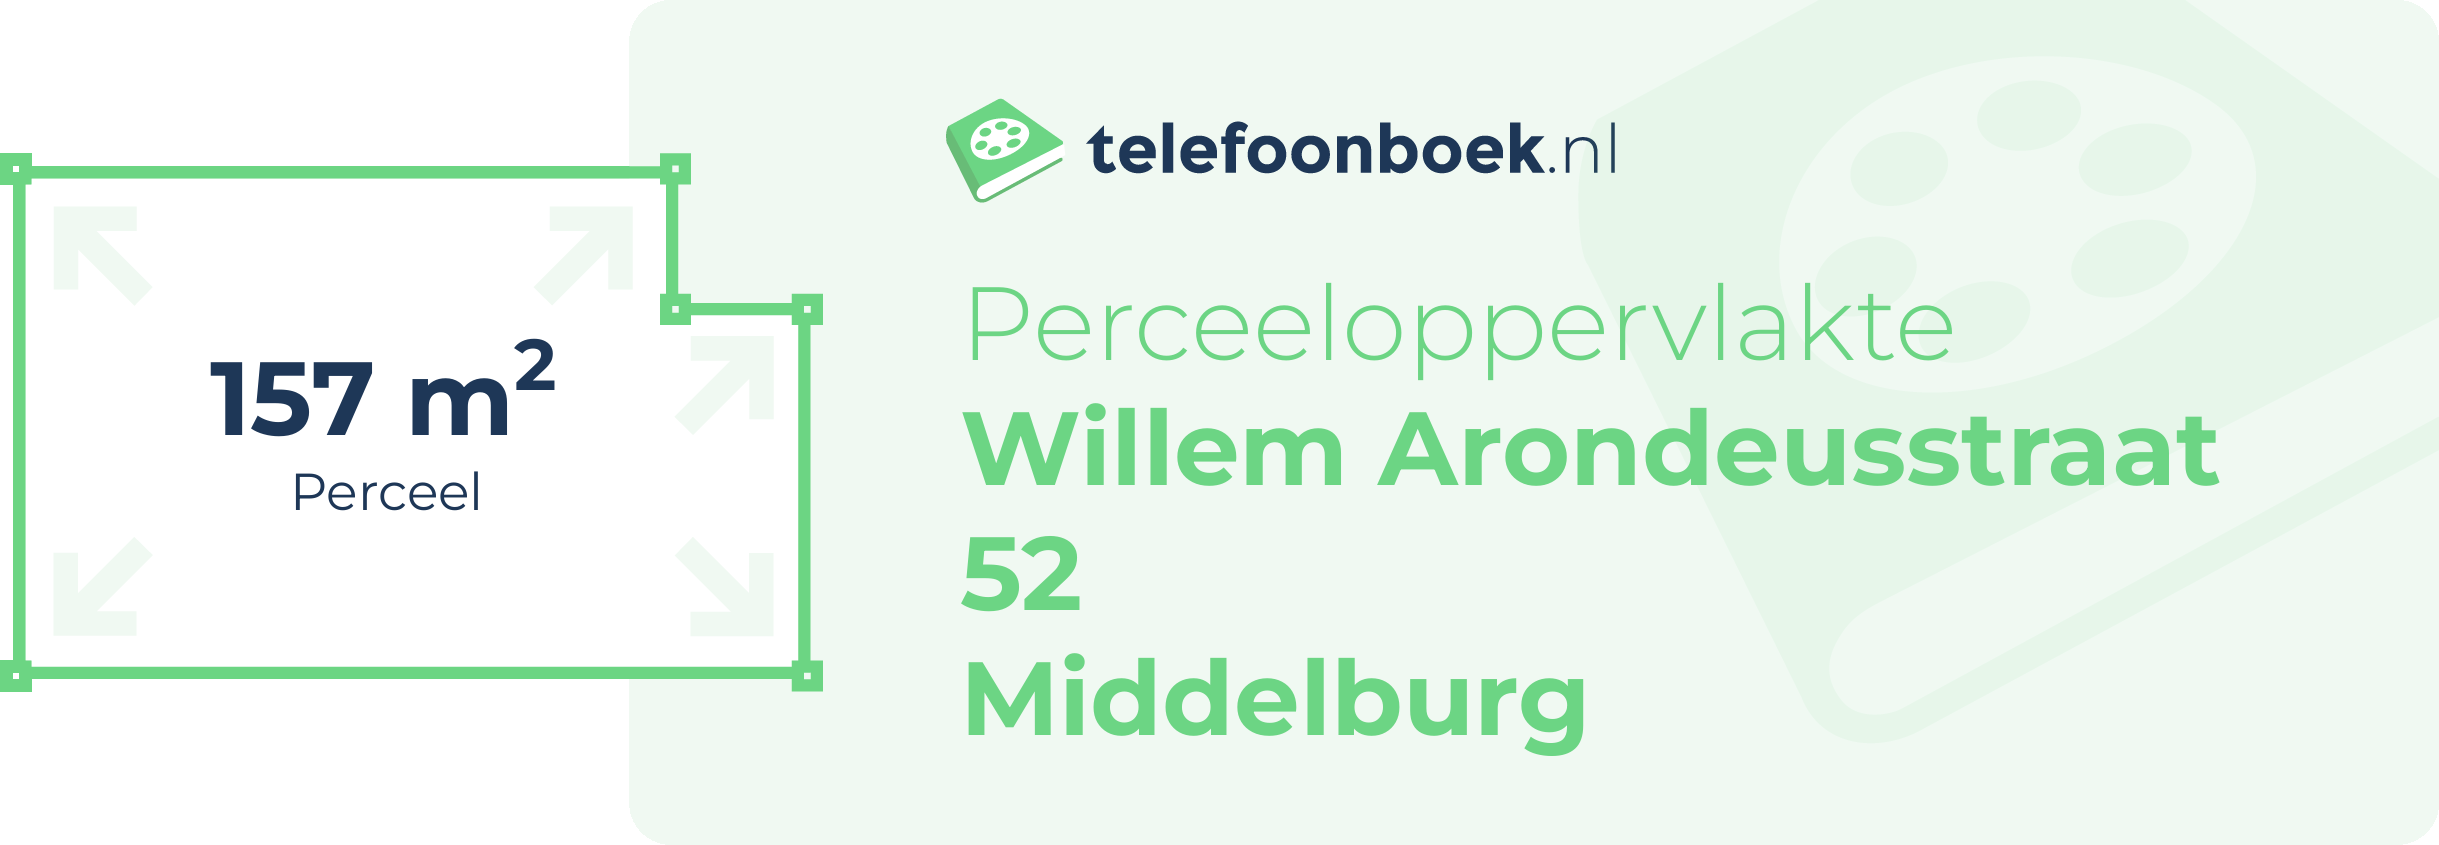 Perceeloppervlakte Willem Arondeusstraat 52 Middelburg